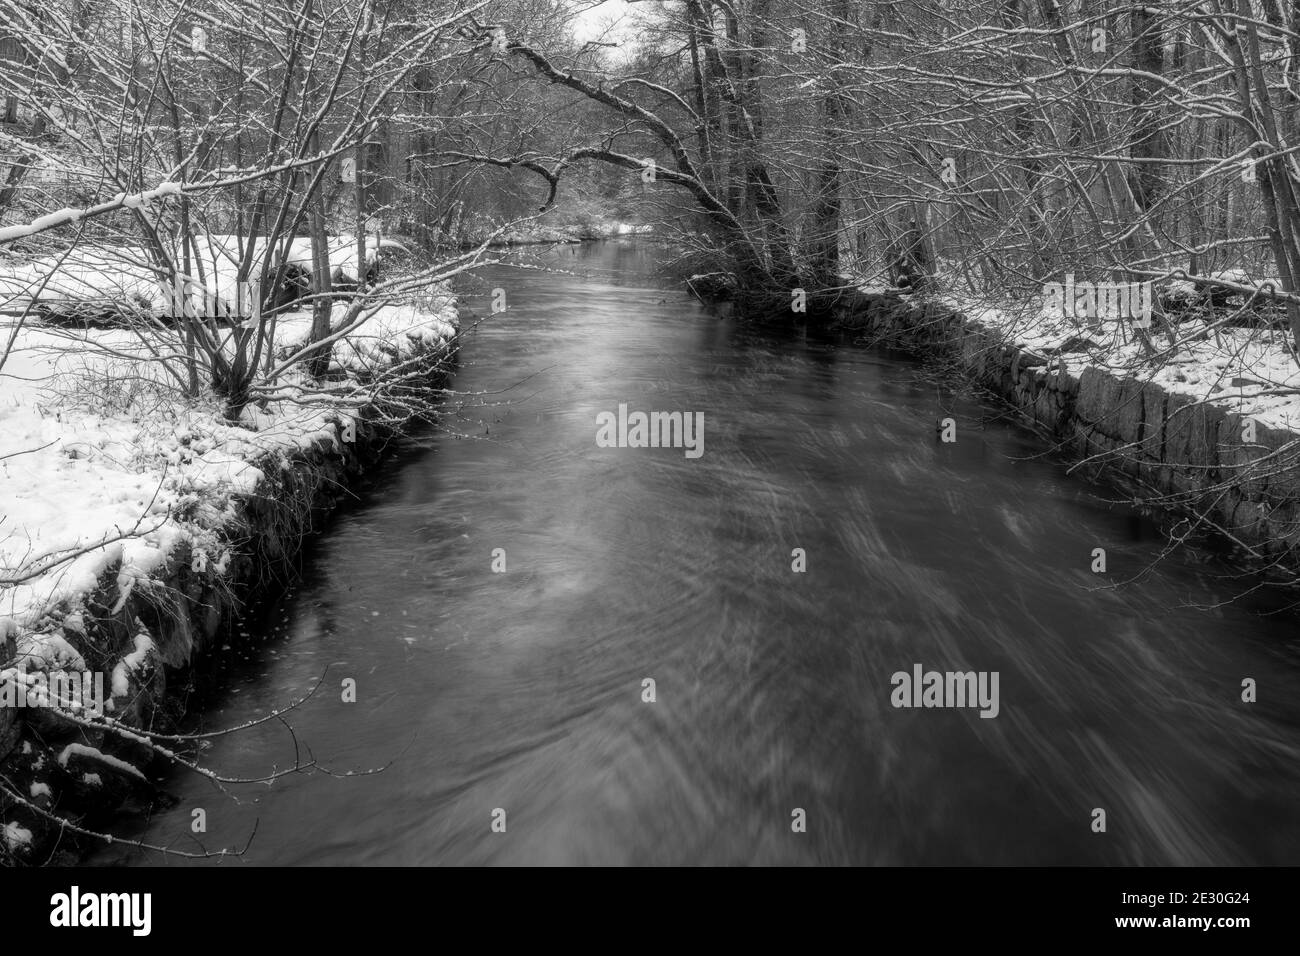 Ein Fluss, der durch einen verschneiten Winterwald schwimmt. Bild Ronne River, Scania County, Schweden Stockfoto